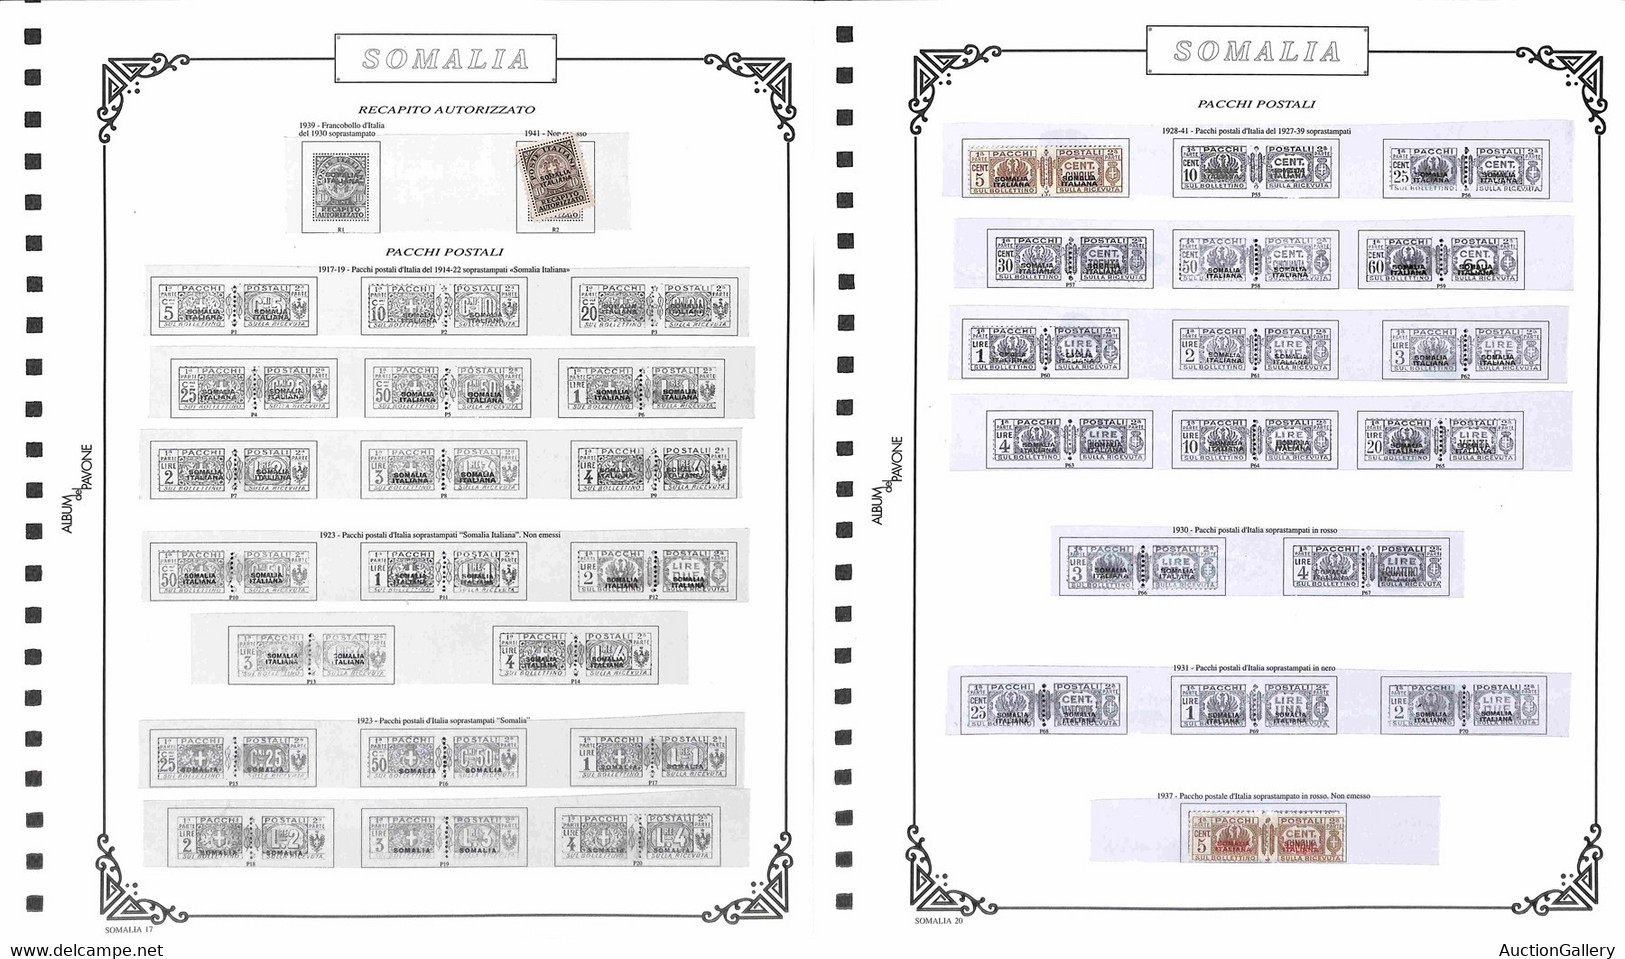 Lotti e Collezioni - SOMALIA - 1903/1935 - Collezione avanzata dei valori emessi nel periodo in genere nuovi con gomma o